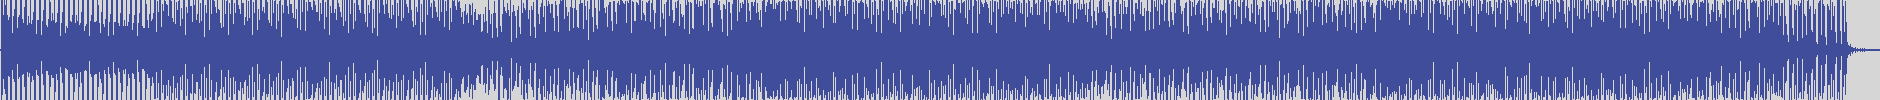 nf_boyz_records [NFY068] Aqua Graham - Uniblack [Sensual Mix] audio wave form